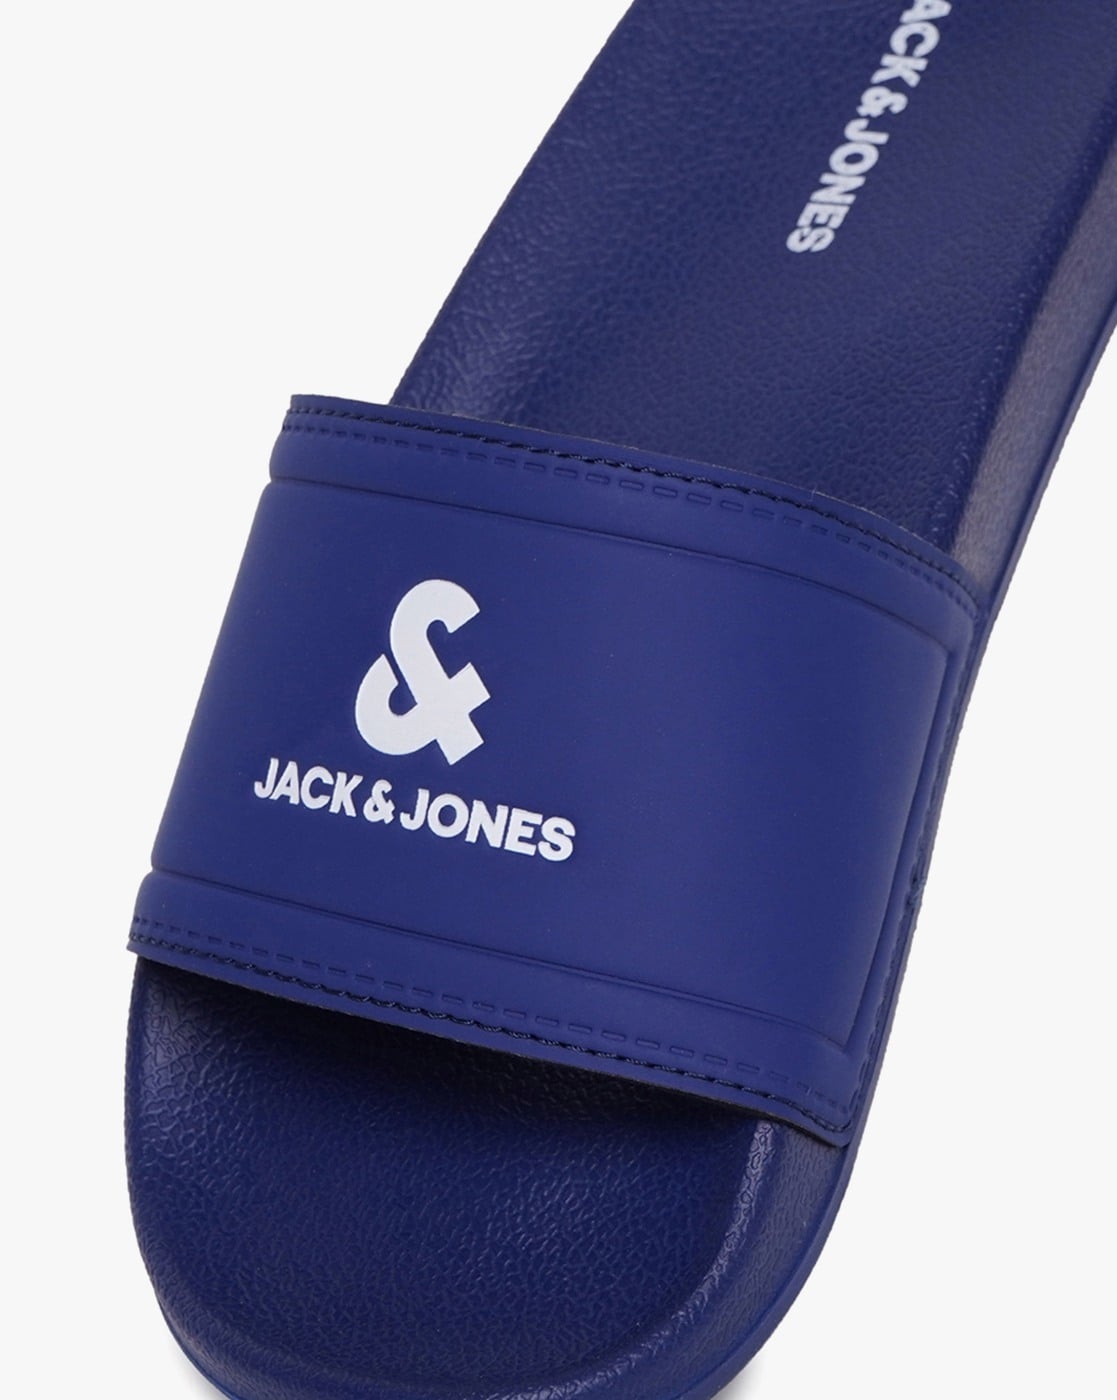 Jack & Jones slip on sandals with Leather buckled straps in black | ASOS |  Sandals, Leather buckle, Slip on sandal